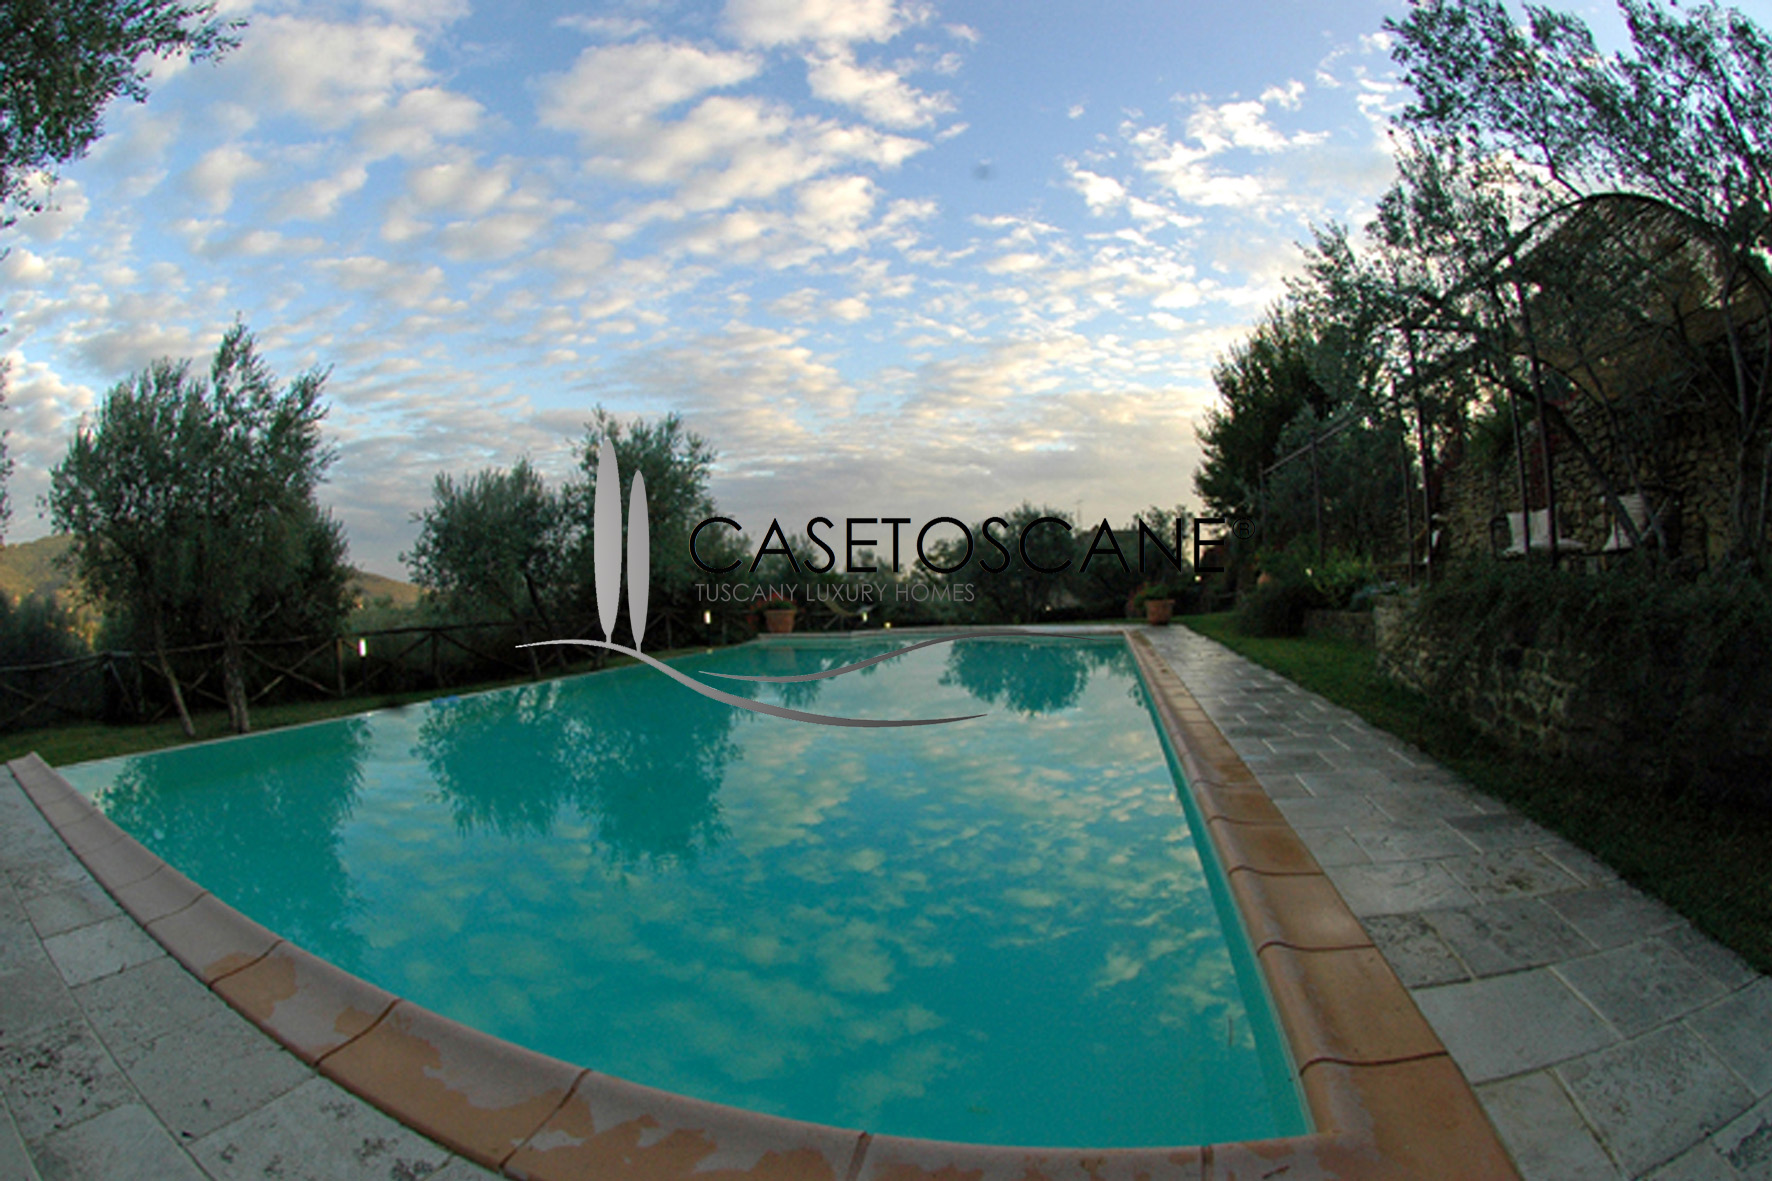 1000 - Casale ristrutturato con due appartamenti, parco e piscina nelle colline di Cortona (AR).